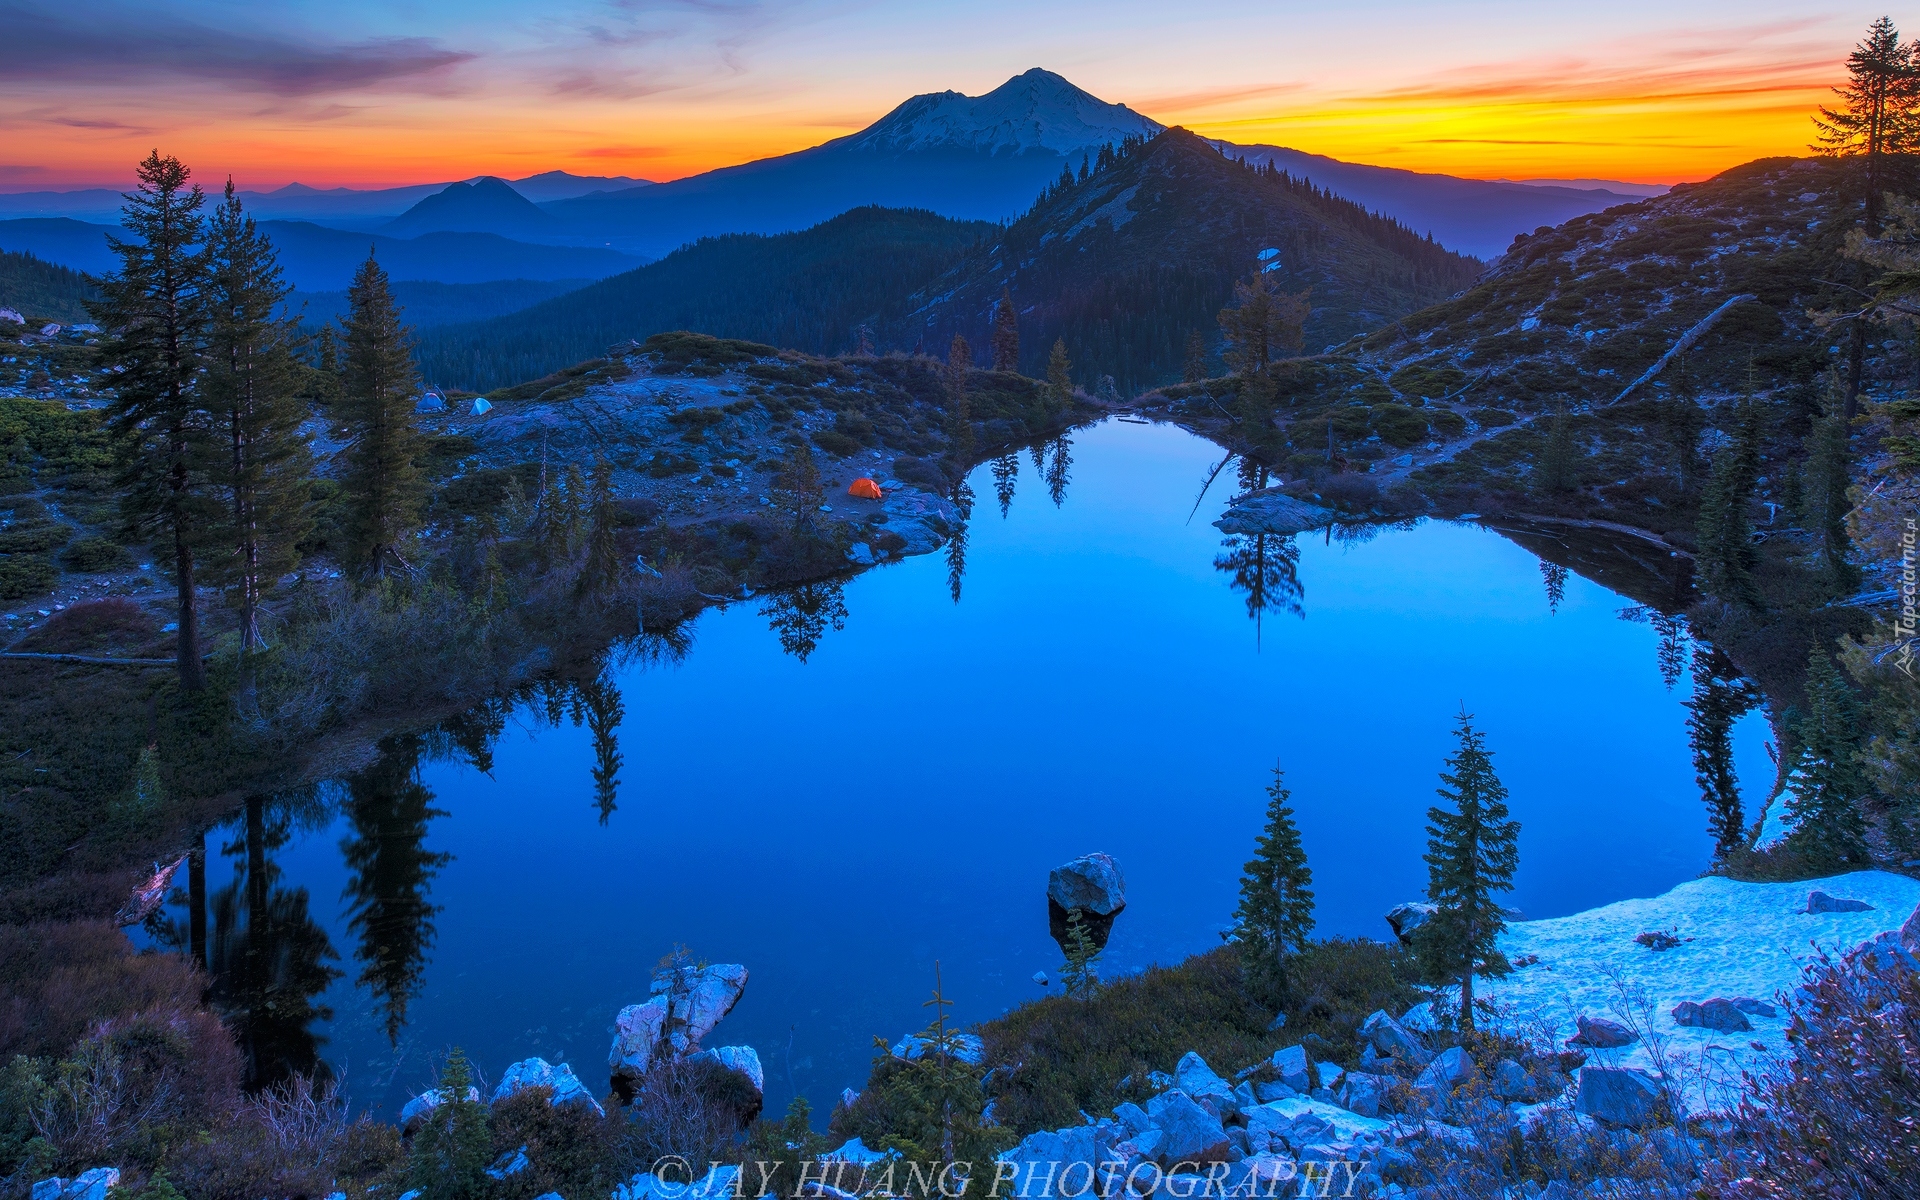 Góry Kaskadowe, Stratowulkan Mount Shasta, Jezioro Heart Lake, Wschód słońca, Kalifornia, Stany Zjednoczone